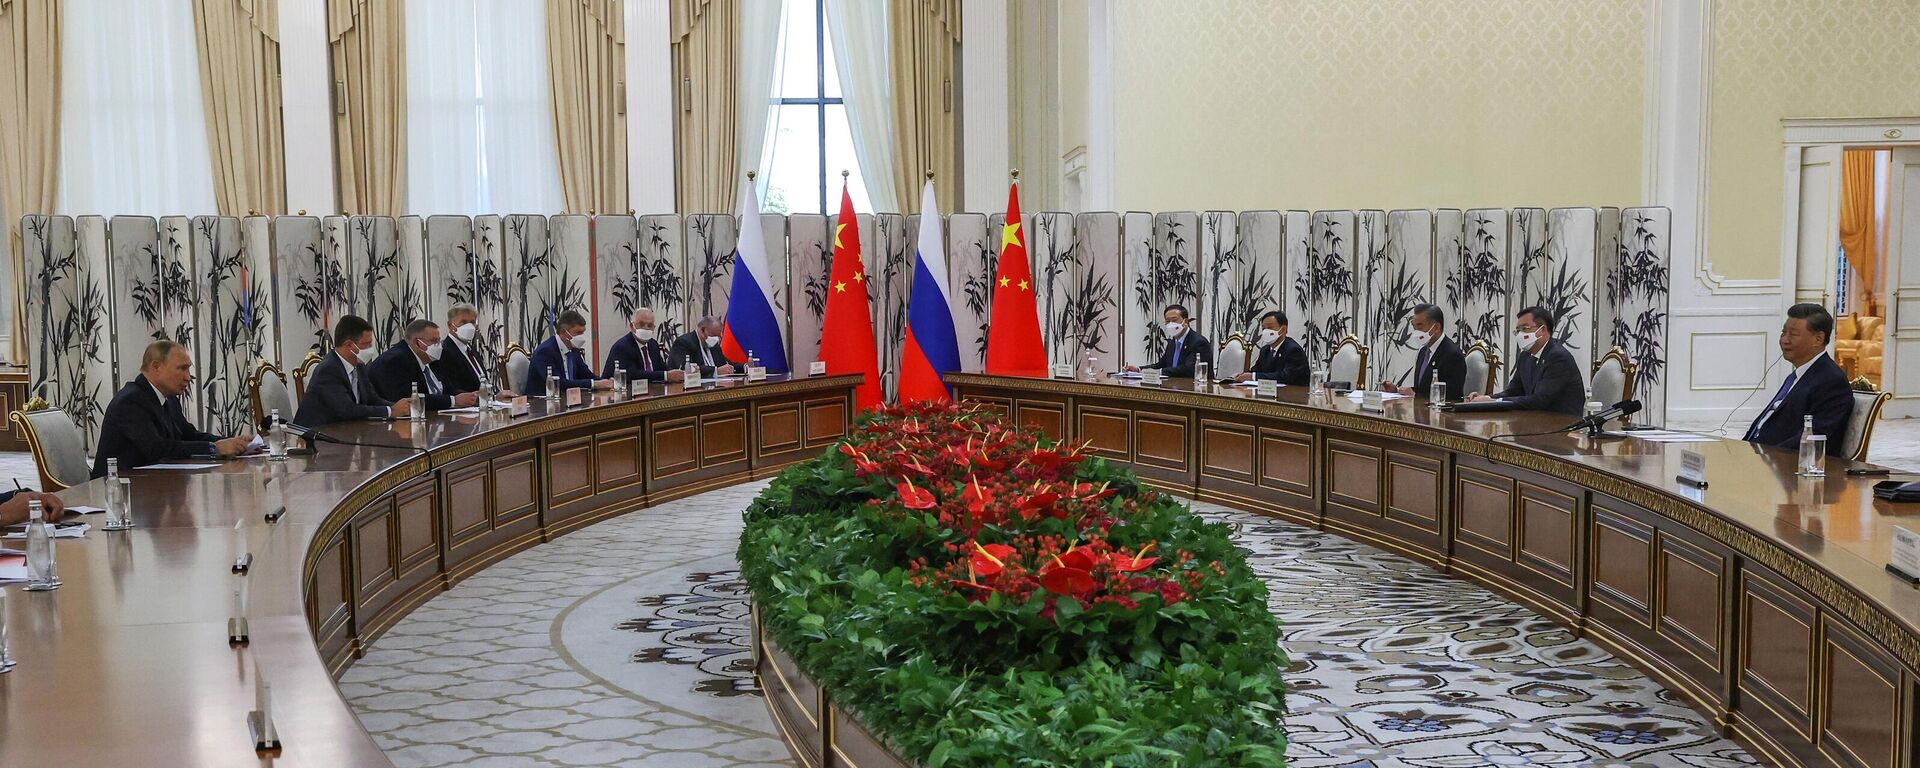 Председник Русије Владимир Путин и председник Кине Си Ђинпинг на састанку у Самарканду - Sputnik Србија, 1920, 16.09.2022